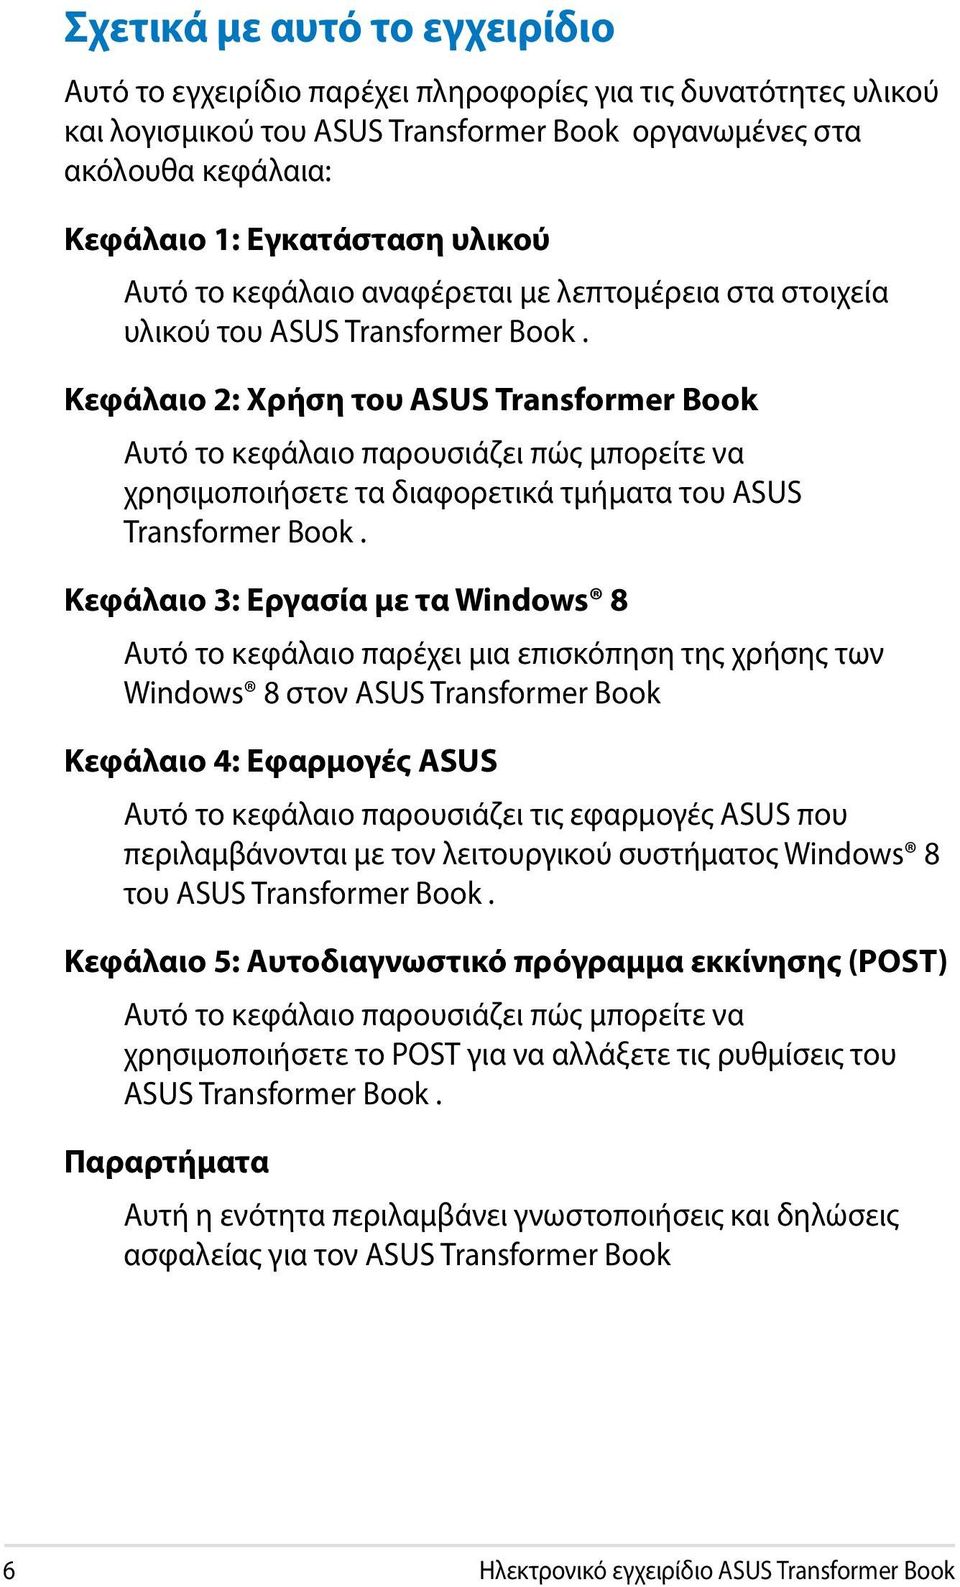 Κεφάλαιο 2: Χρήση του ASUS Transformer Book Αυτό το κεφάλαιο παρουσιάζει πώς μπορείτε να χρησιμοποιήσετε τα διαφορετικά τμήματα του ASUS Transformer Book.